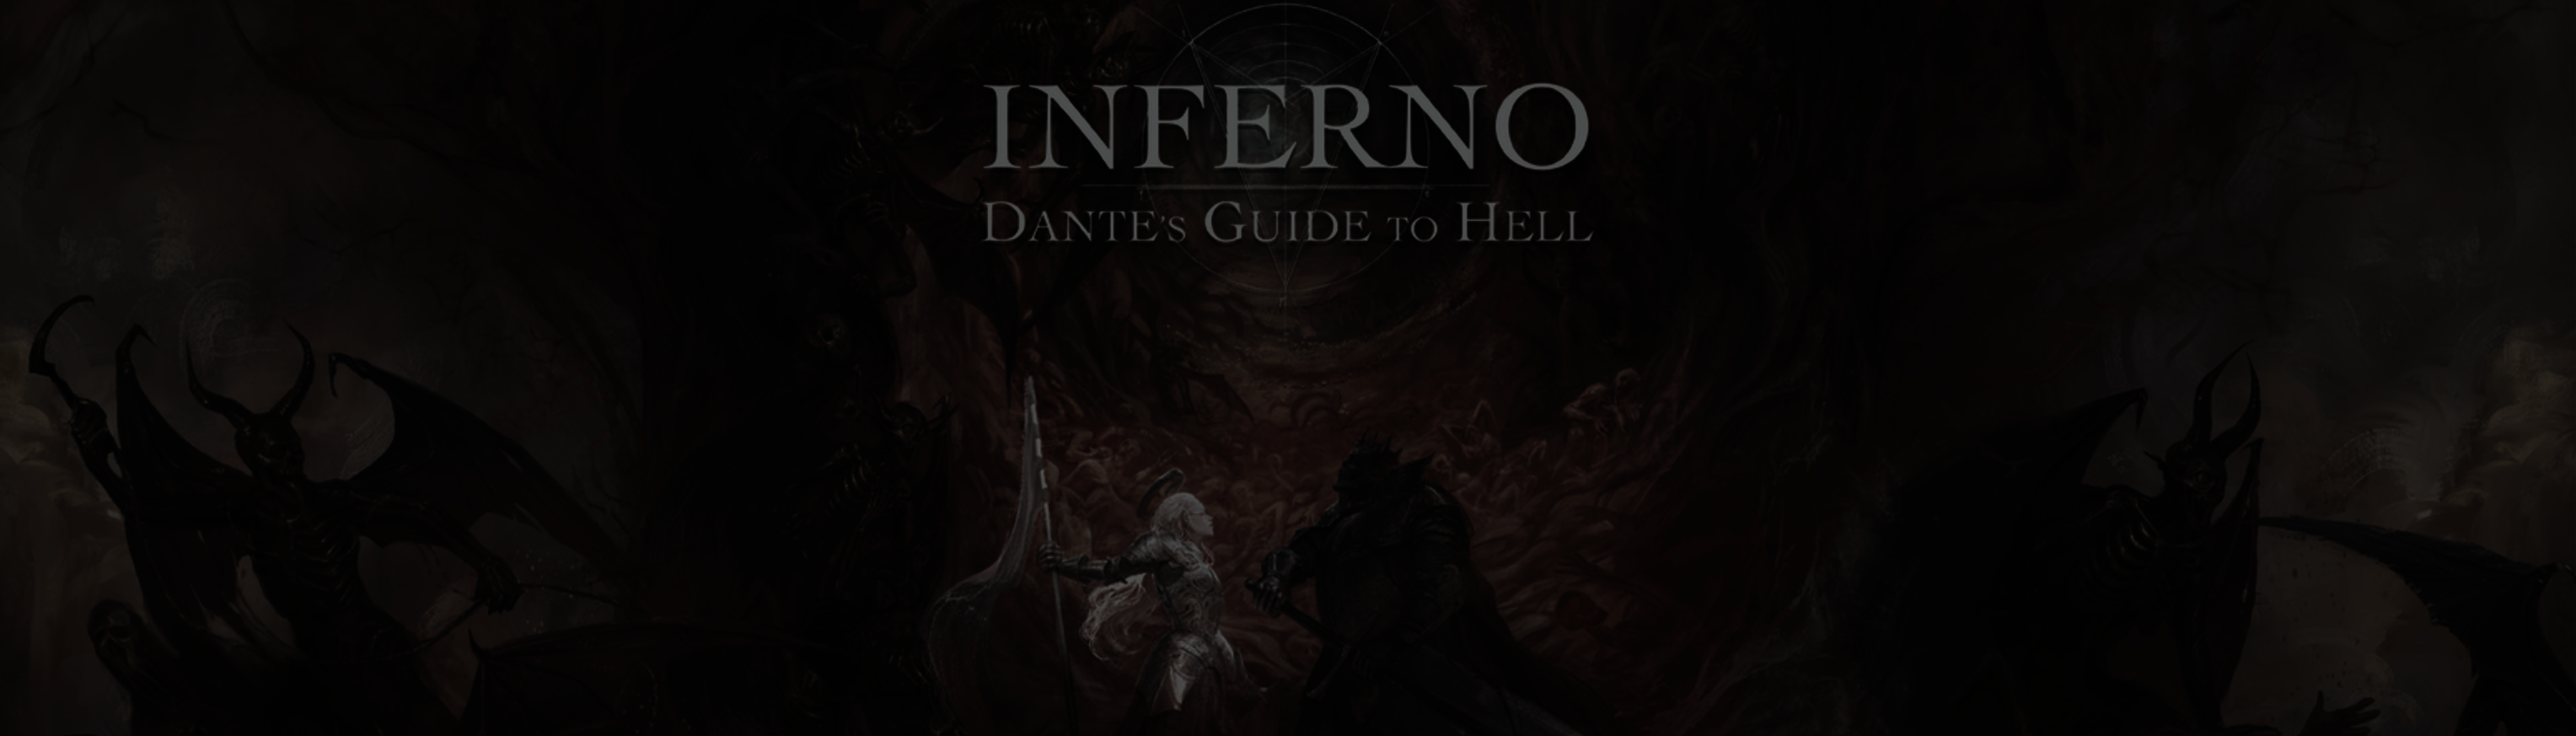 Cerbero - Inferno: Dante's Guide to Hell 5e by VincenzoPrattico on